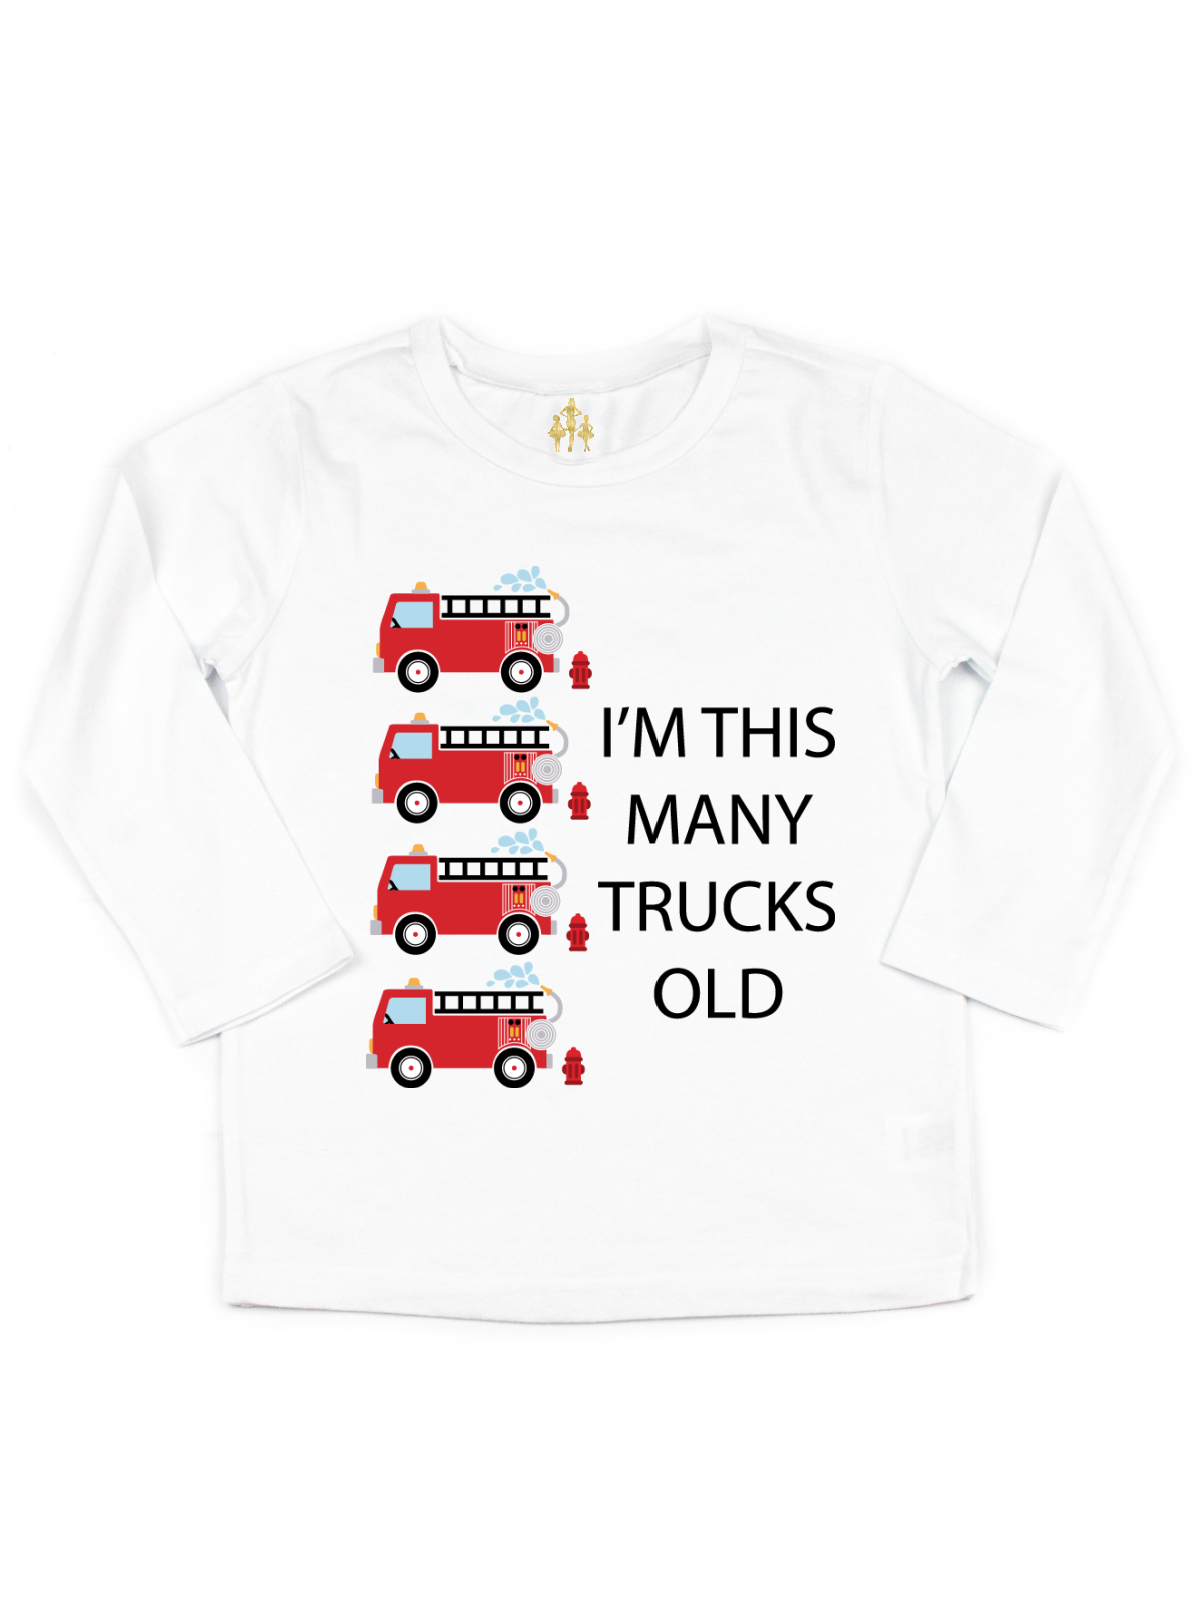 im this many trucks old kids birthday shirt